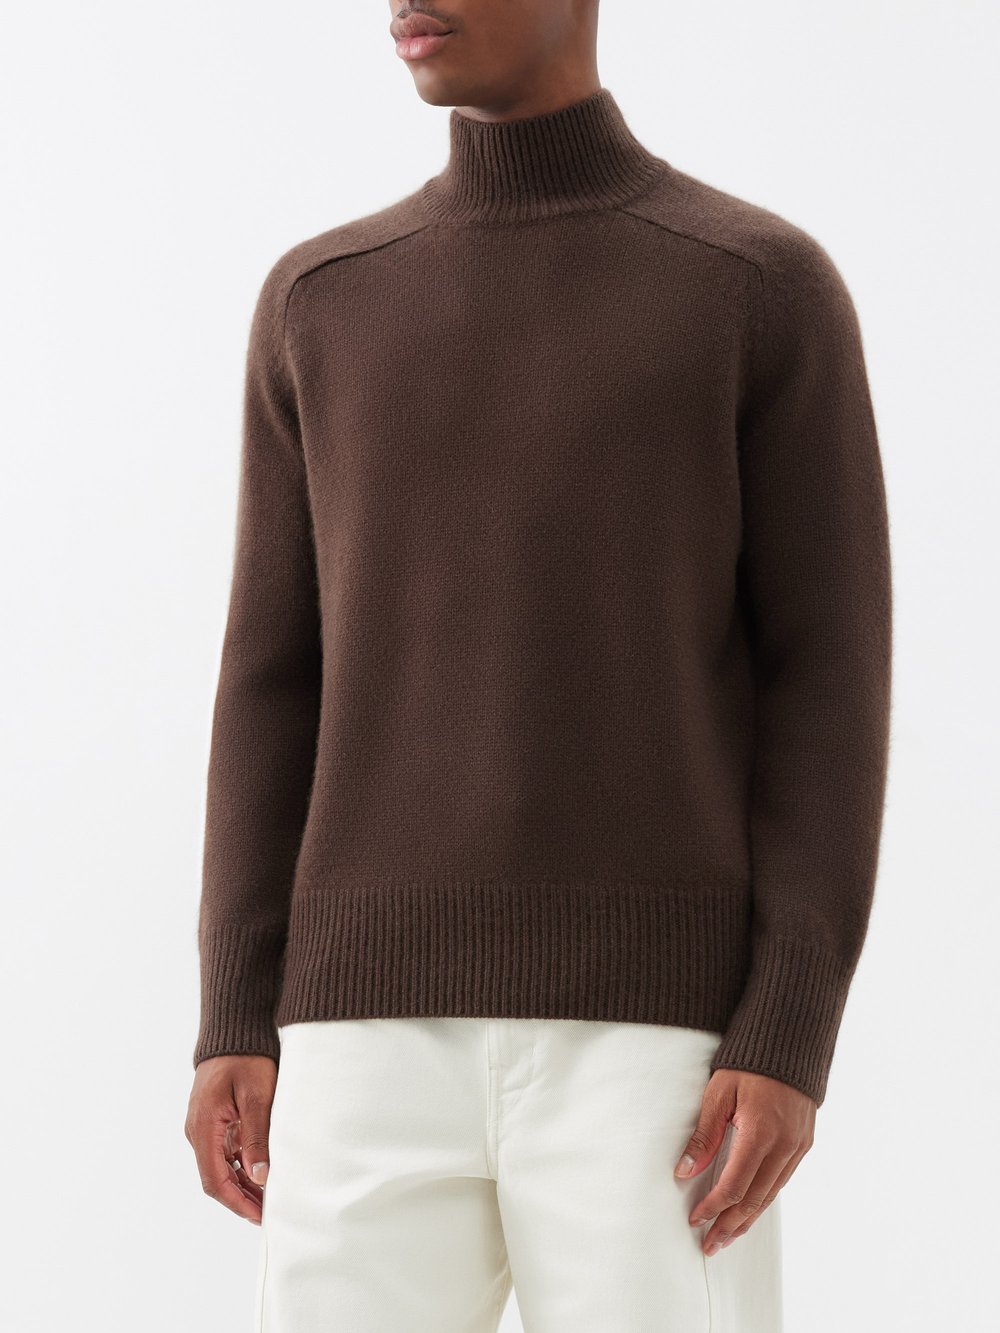 цена Кашемировый свитер mr edith grove с высоким воротником Arch4, коричневый